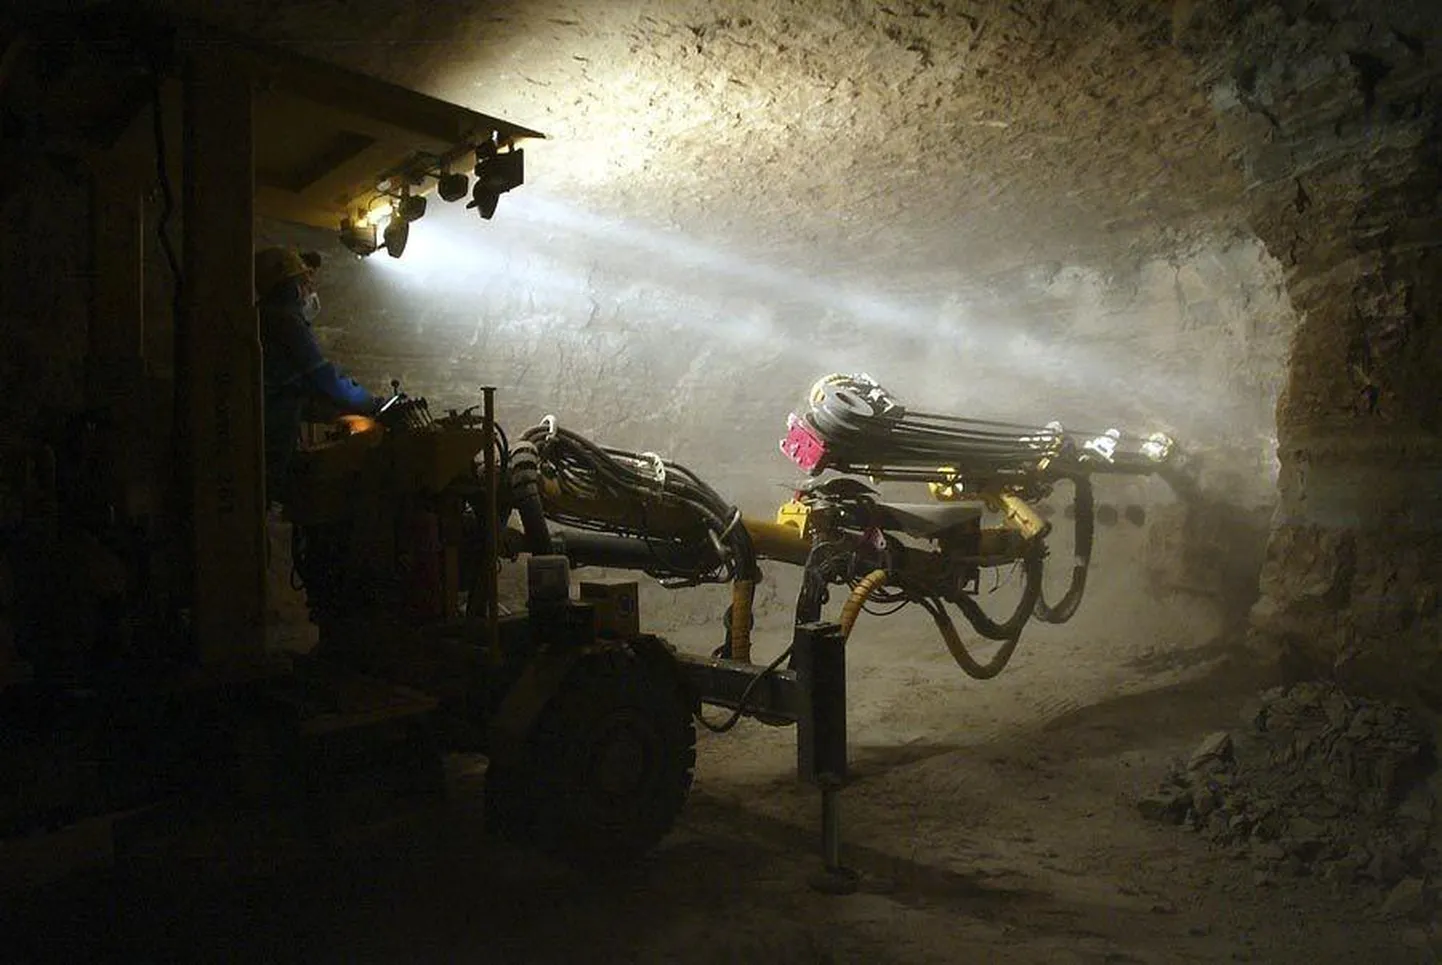 Estonia kaevandus 2006. aasta sügisel. Pilt on artiklit illustreeriv.